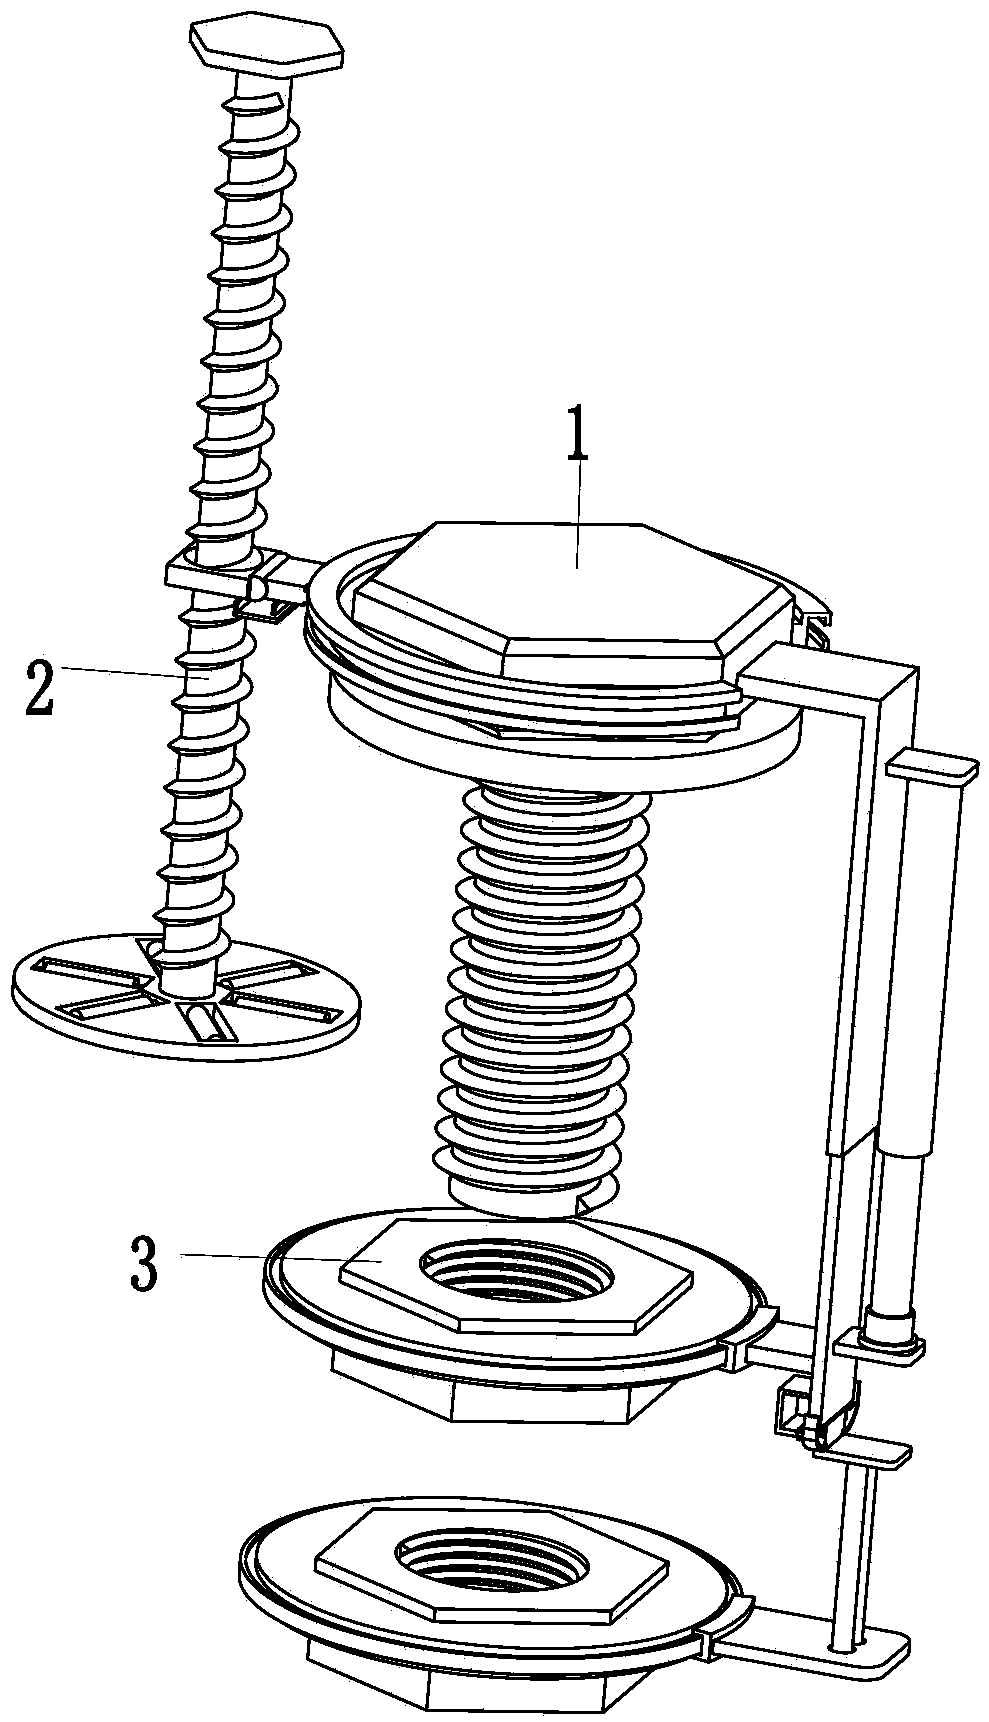 Locking mechanical fastener